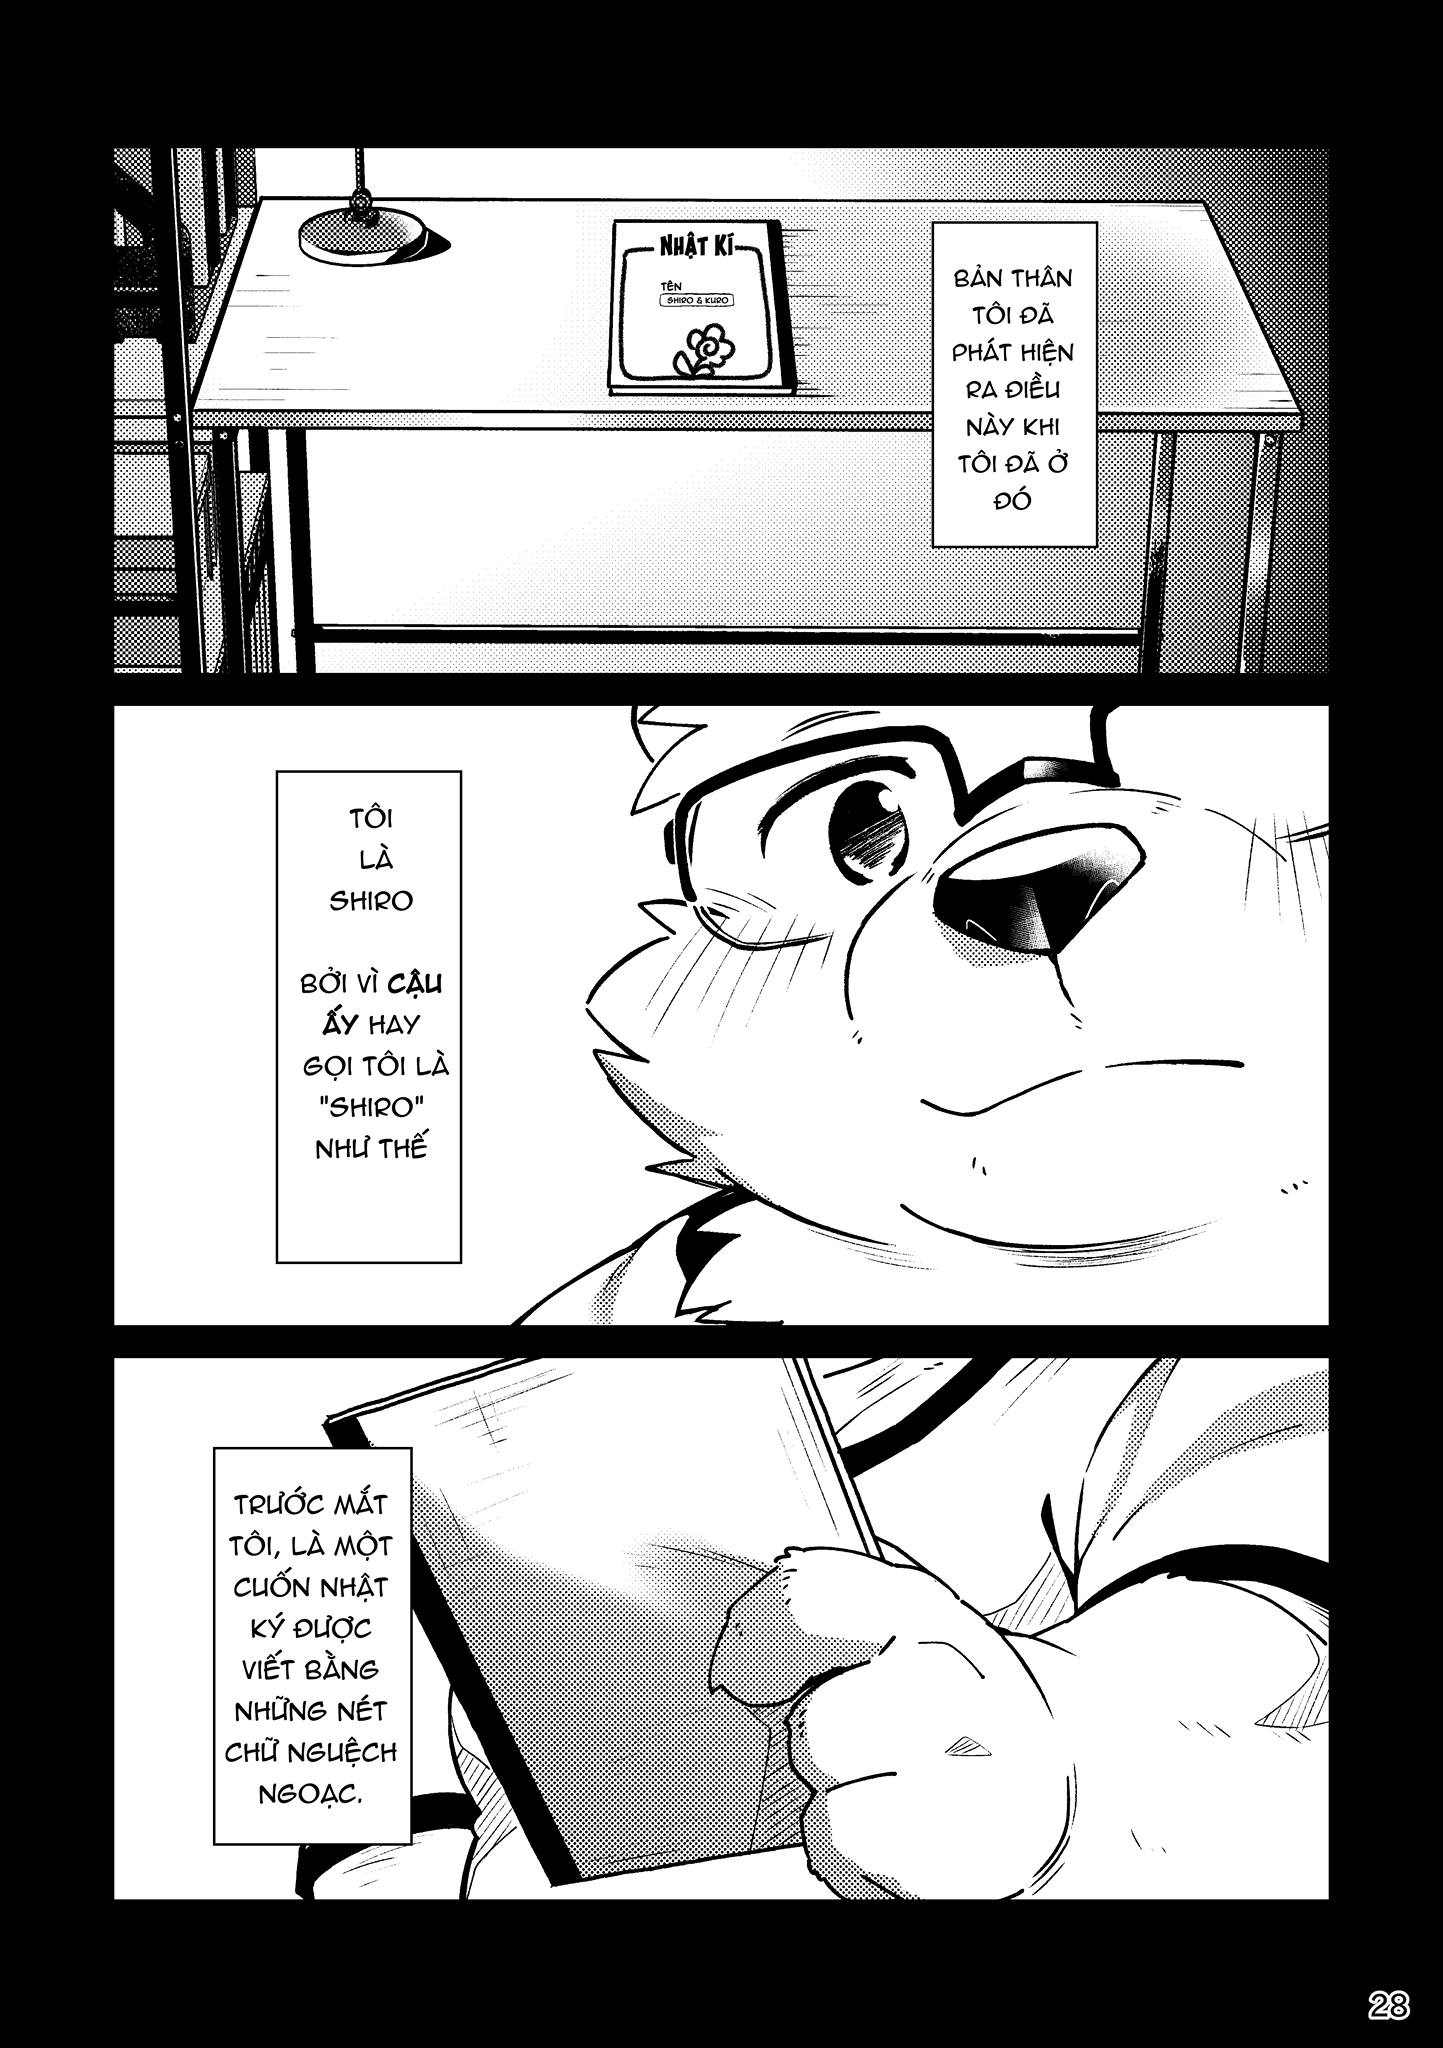 [Hinami] Shiro và Kuro  2 [VN] - Trang 28